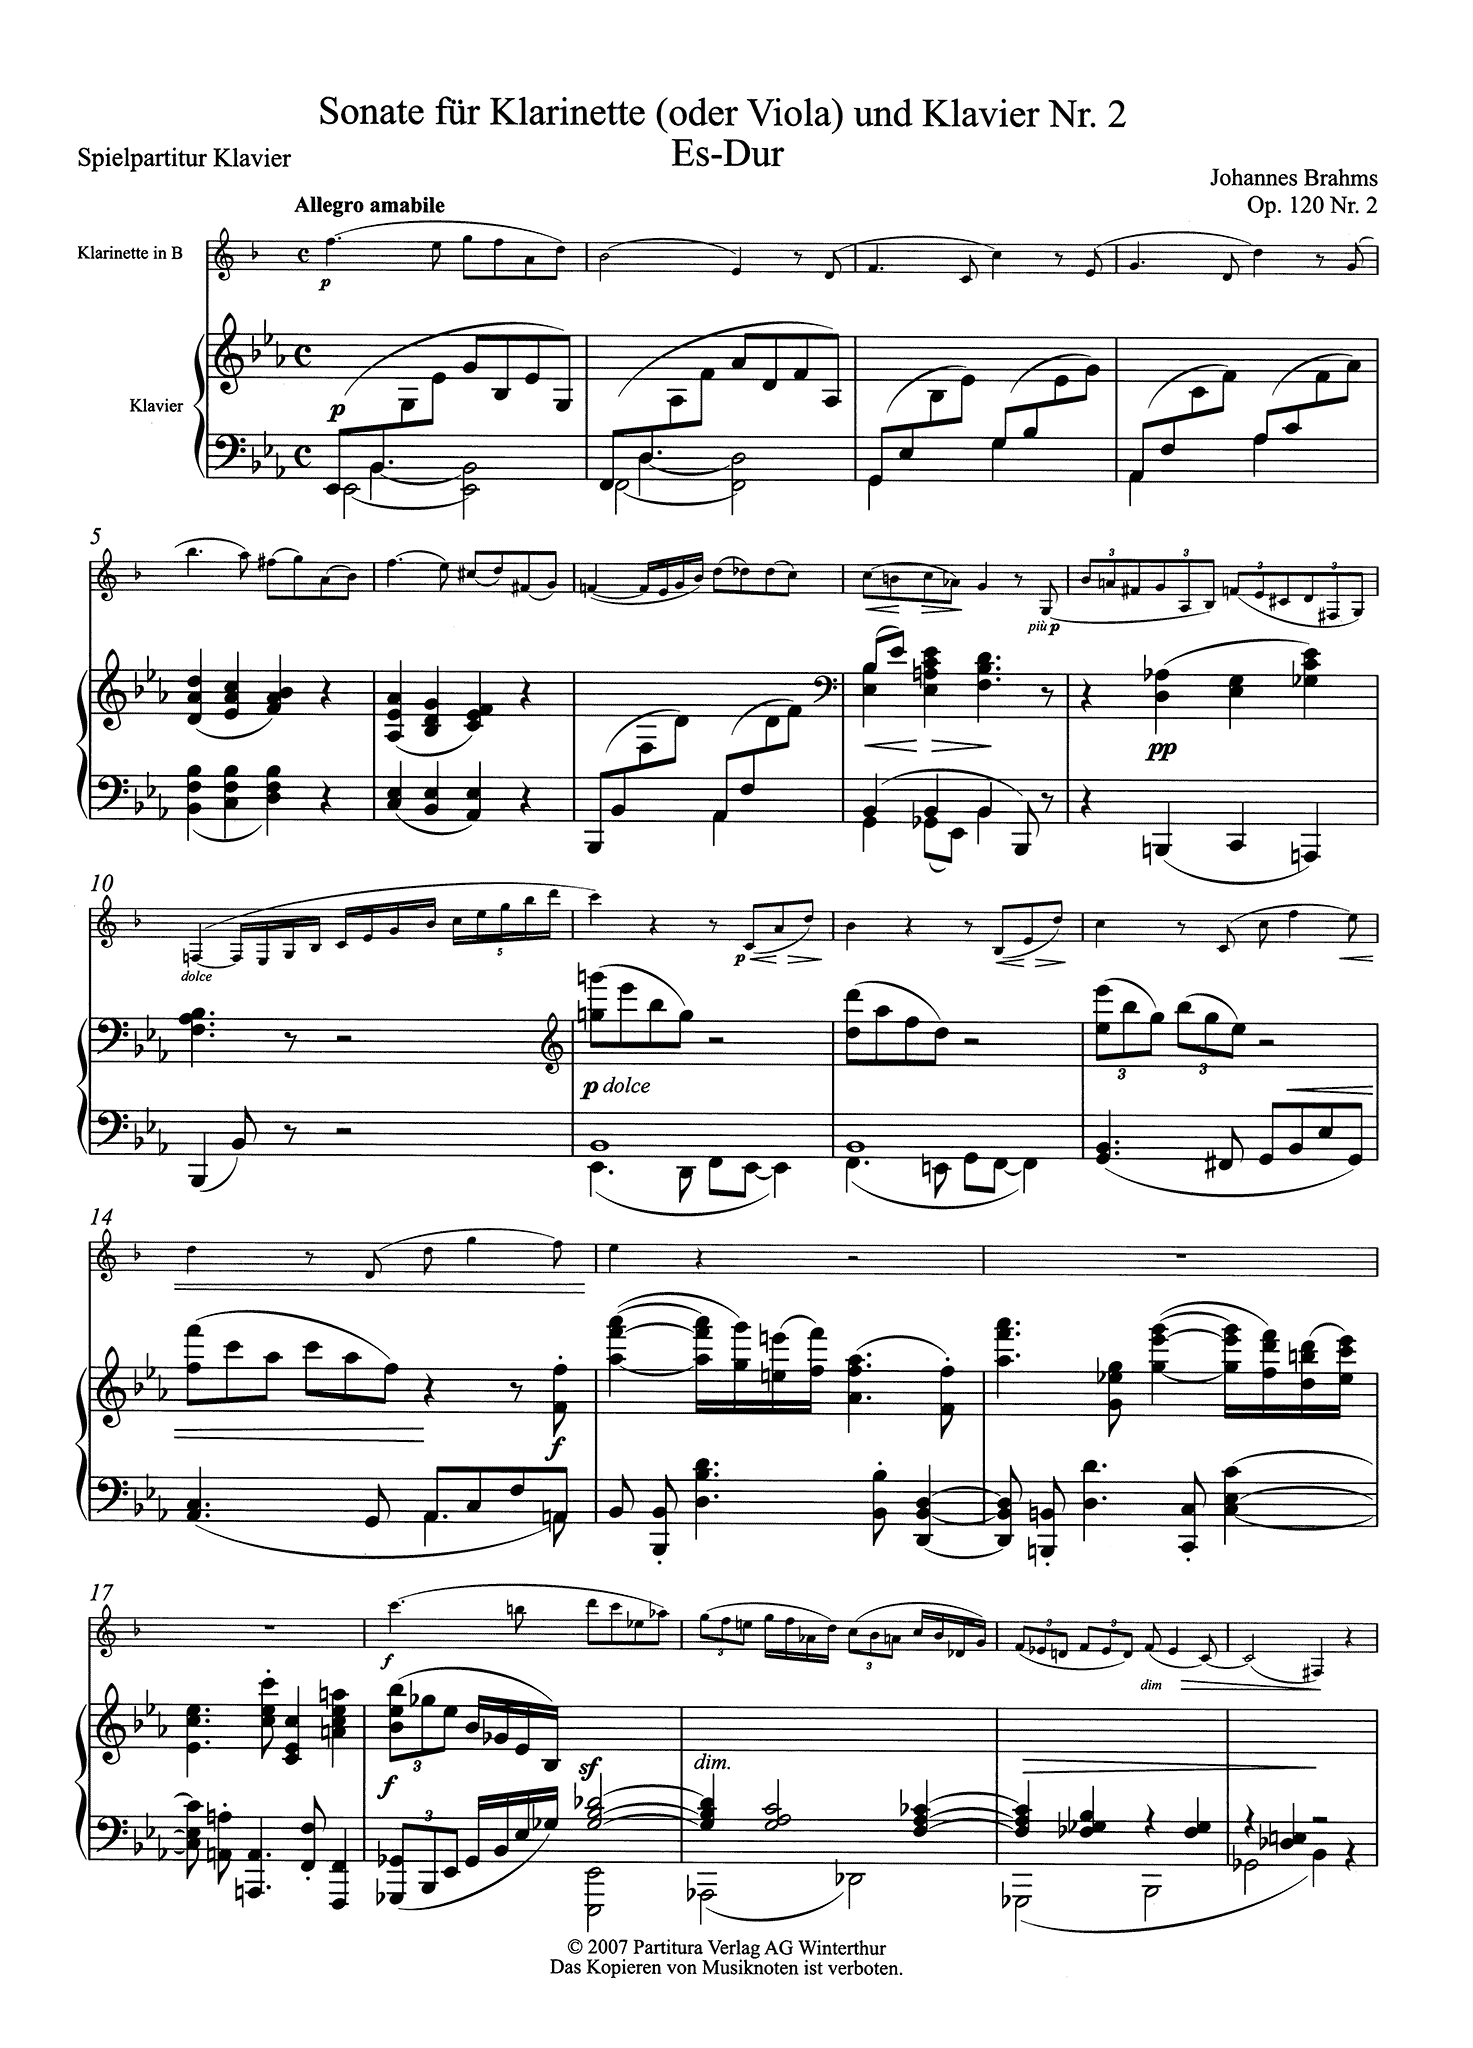 Sonata in E-flat Major, Op. 120 No. 2 - Piano Score Movement 1